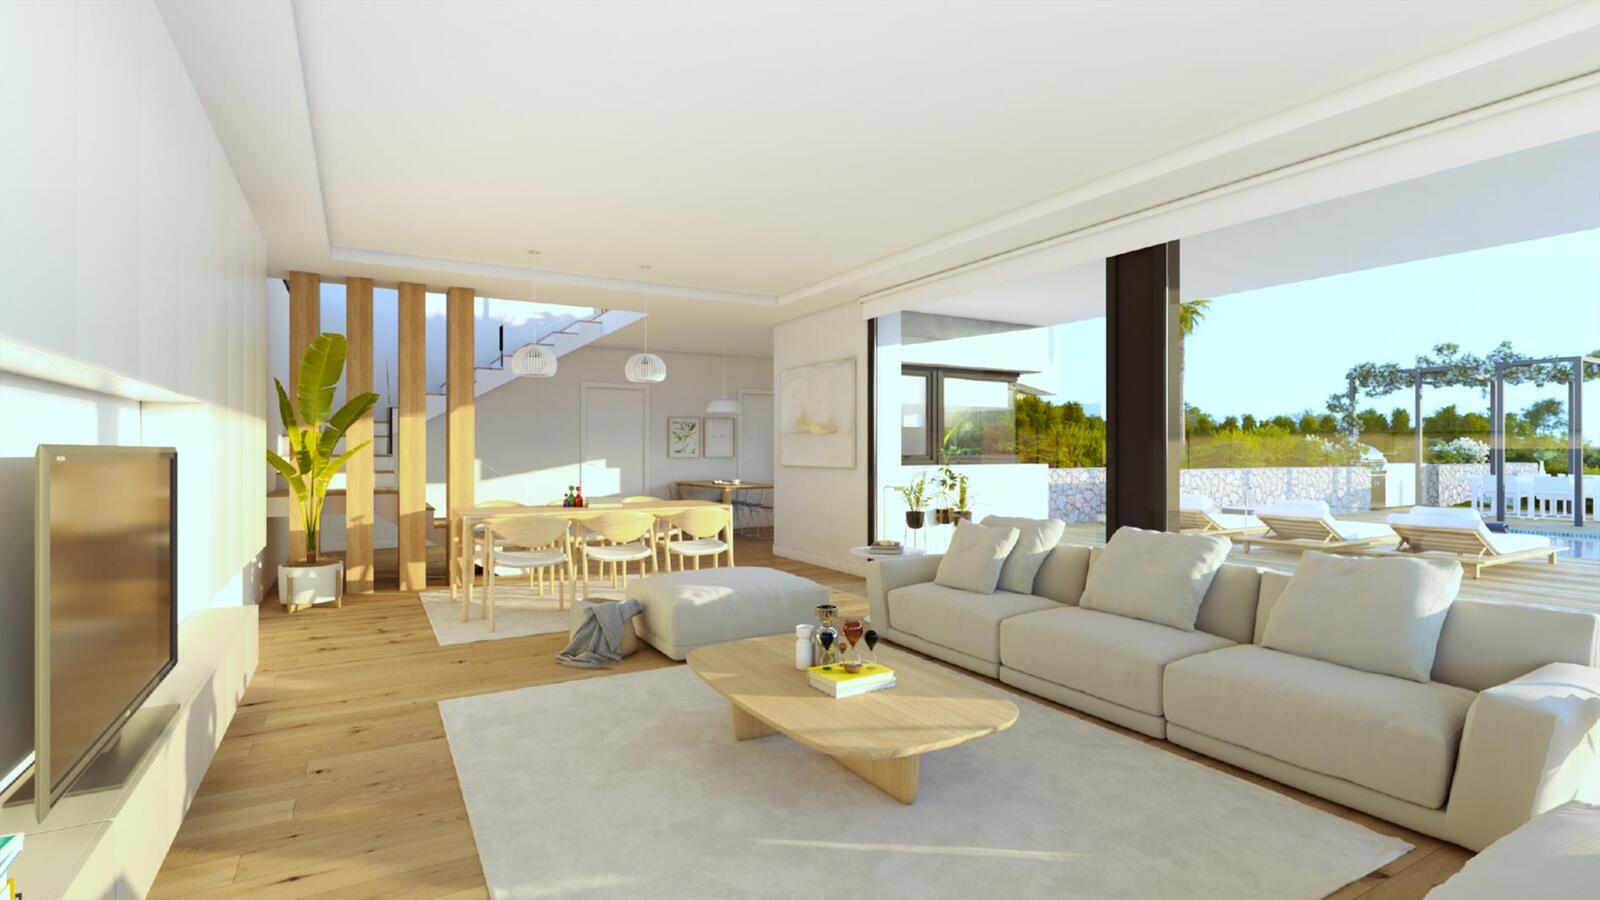 VILLA EDEN - Encinas Design moderne luxe-villa te koop in Cumbre del Sol 